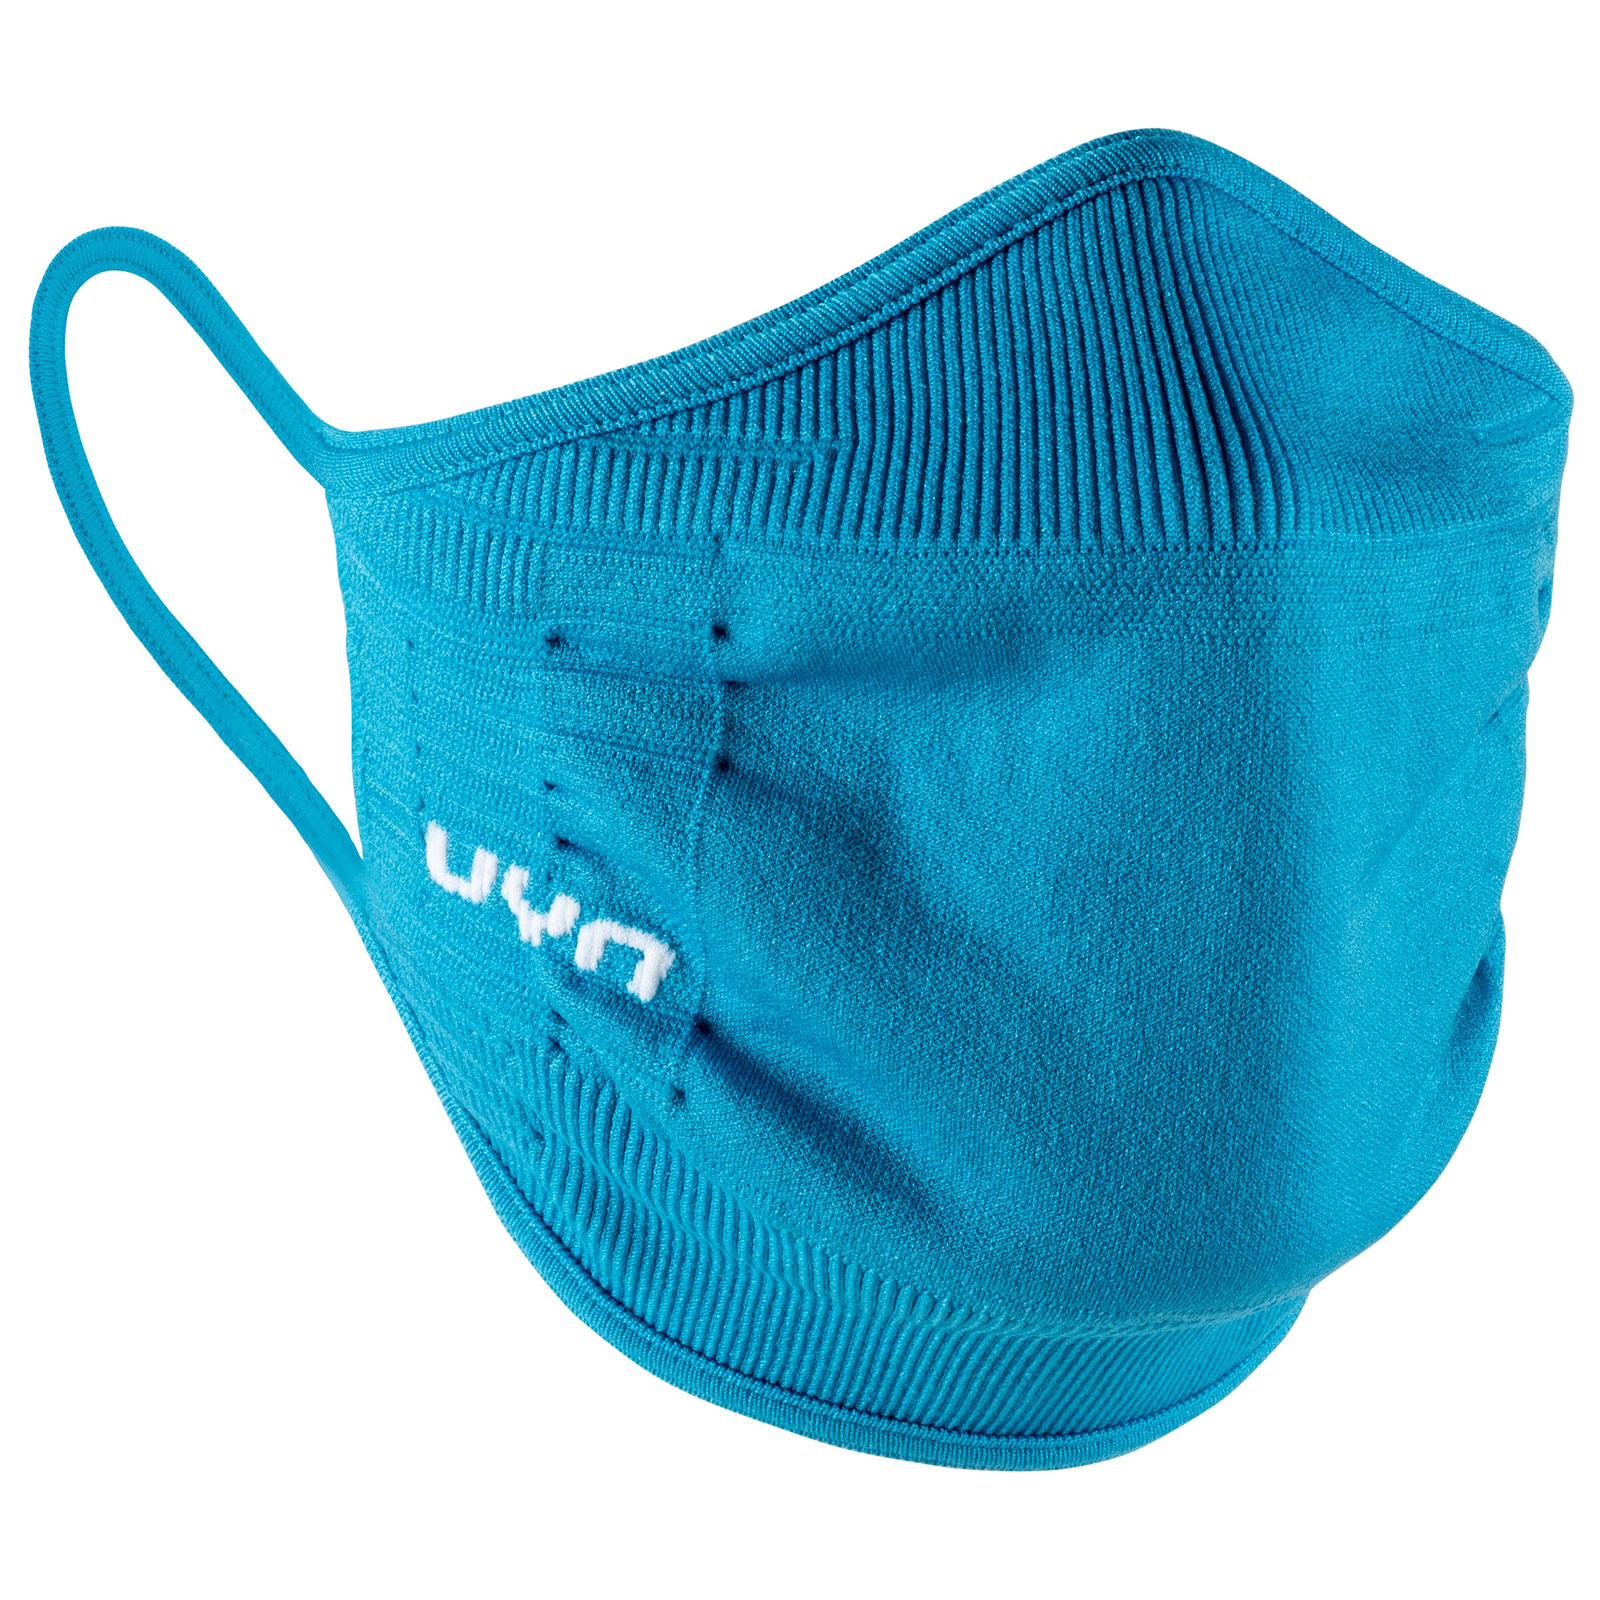 Produktbild von UYN Community Gesichtsmaske - bright blue